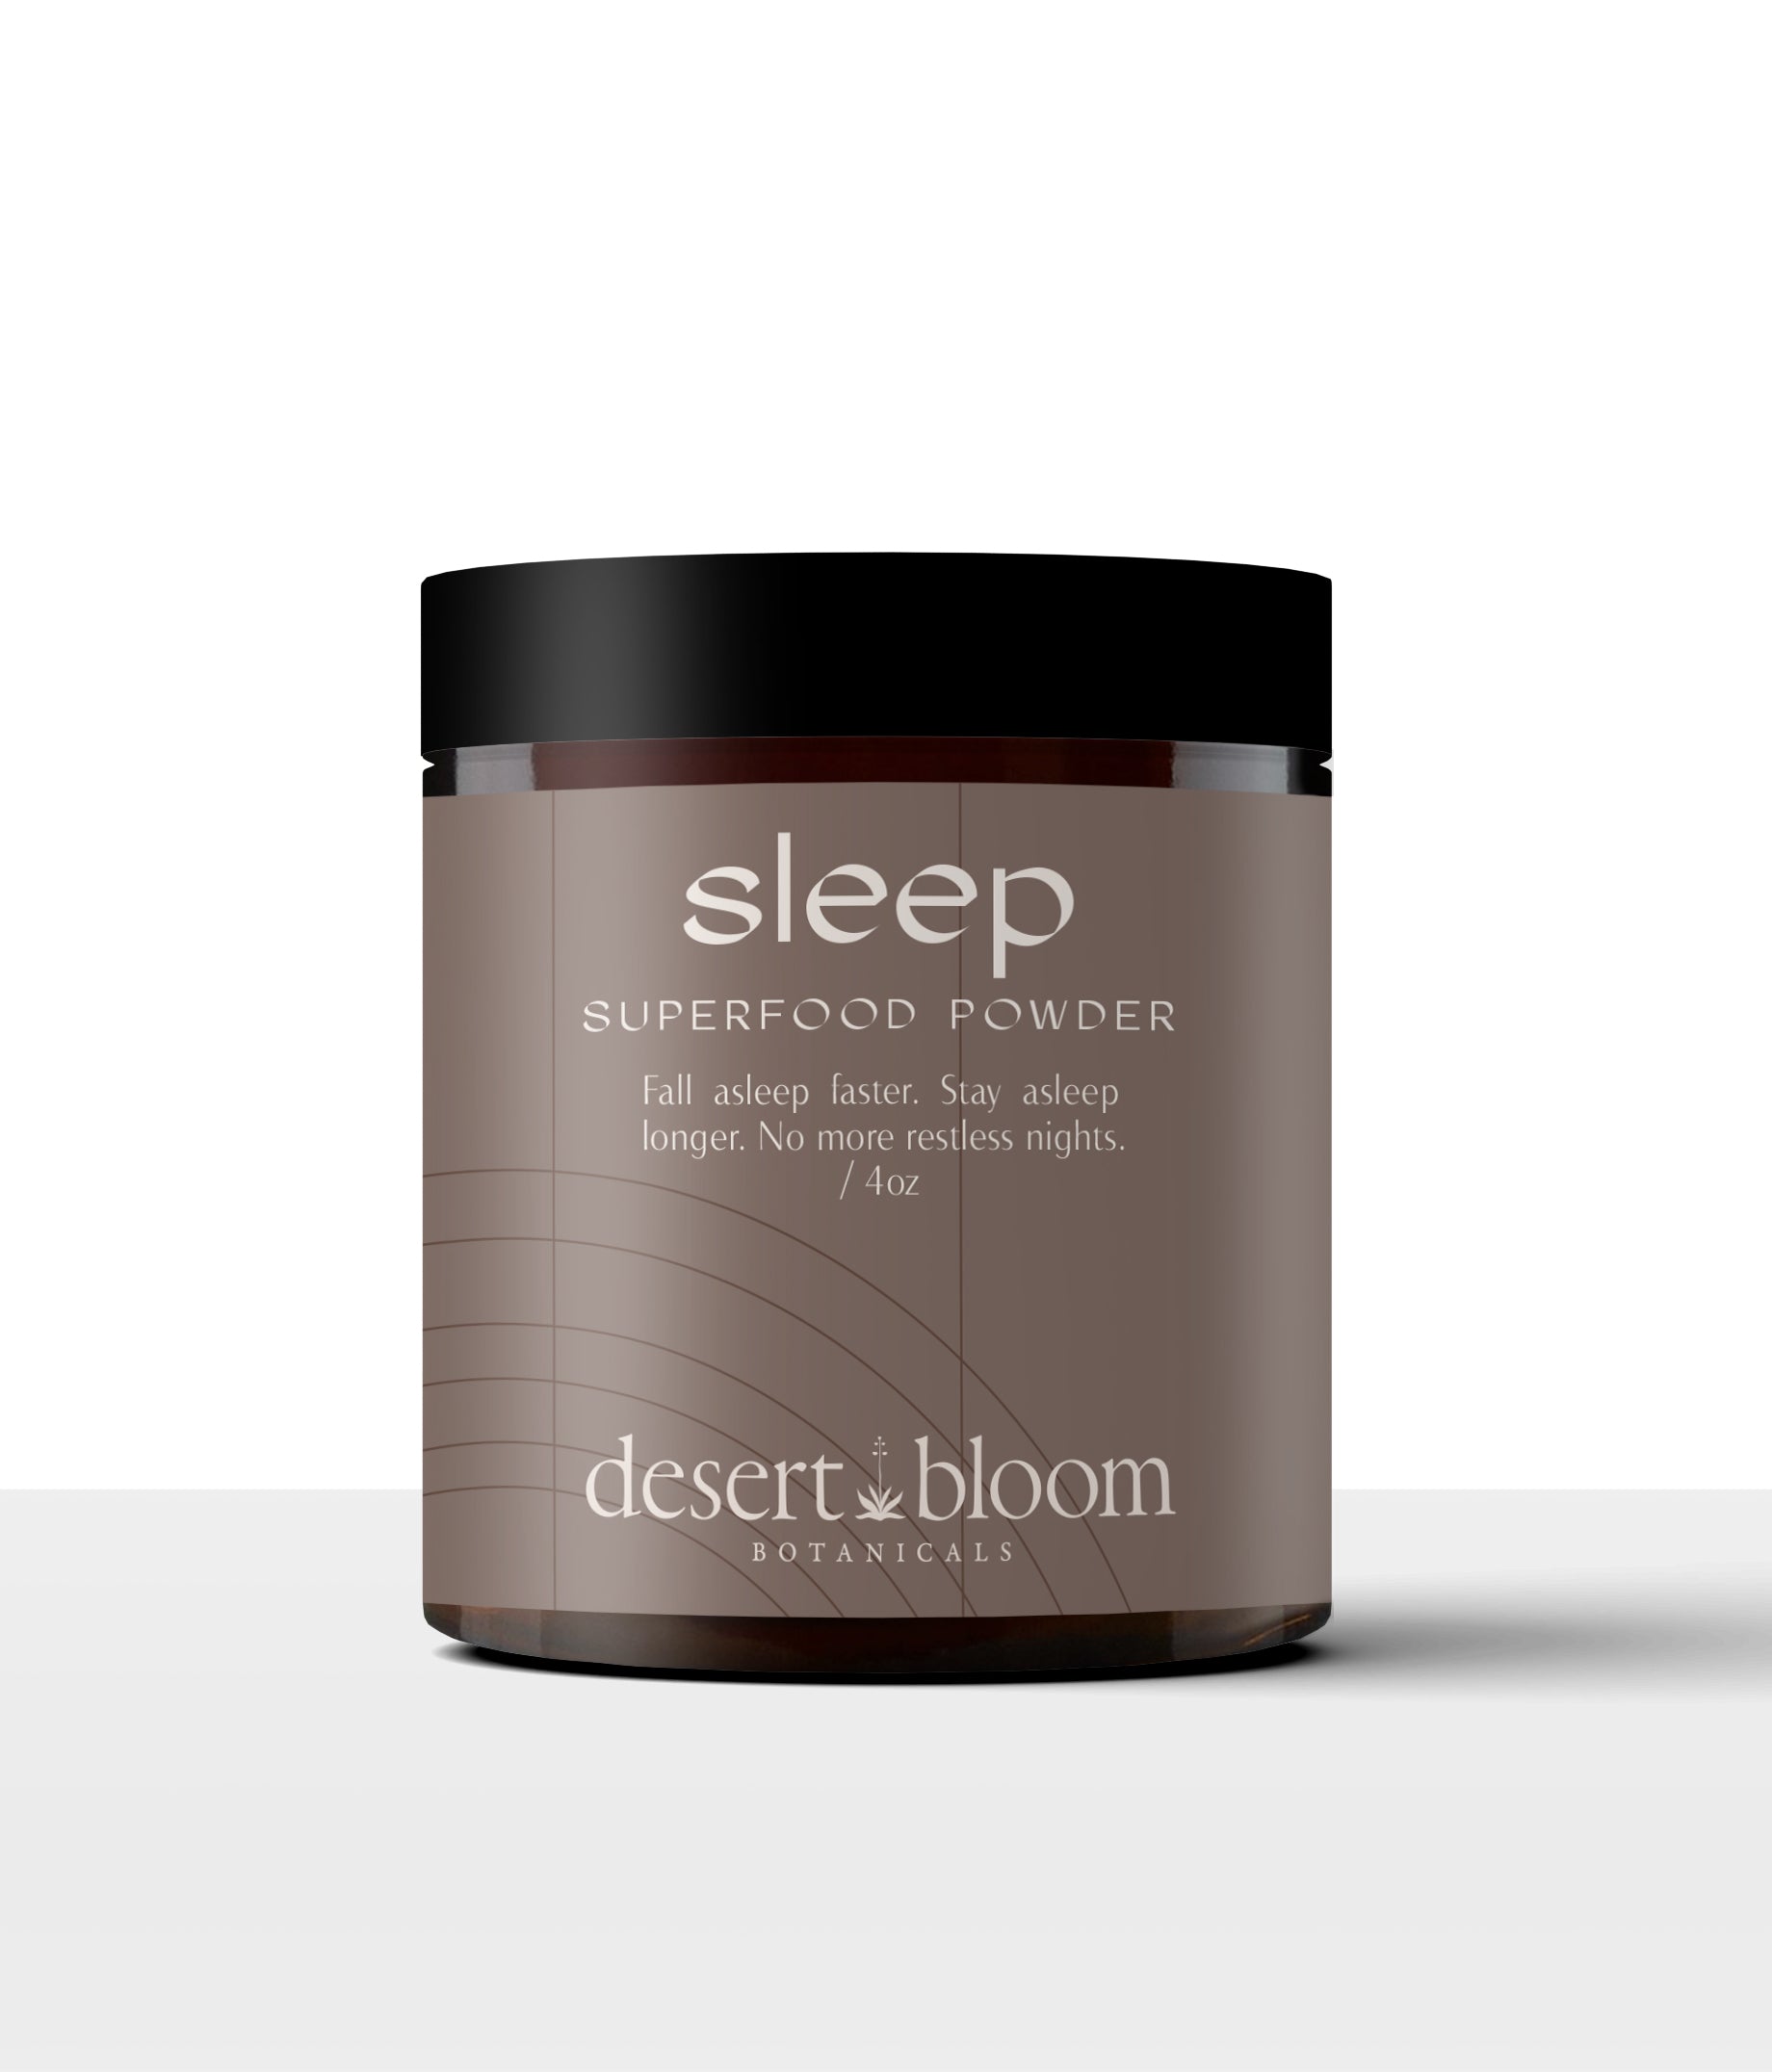 Sleep Superfood Powder - Desert Bloom Botanicals